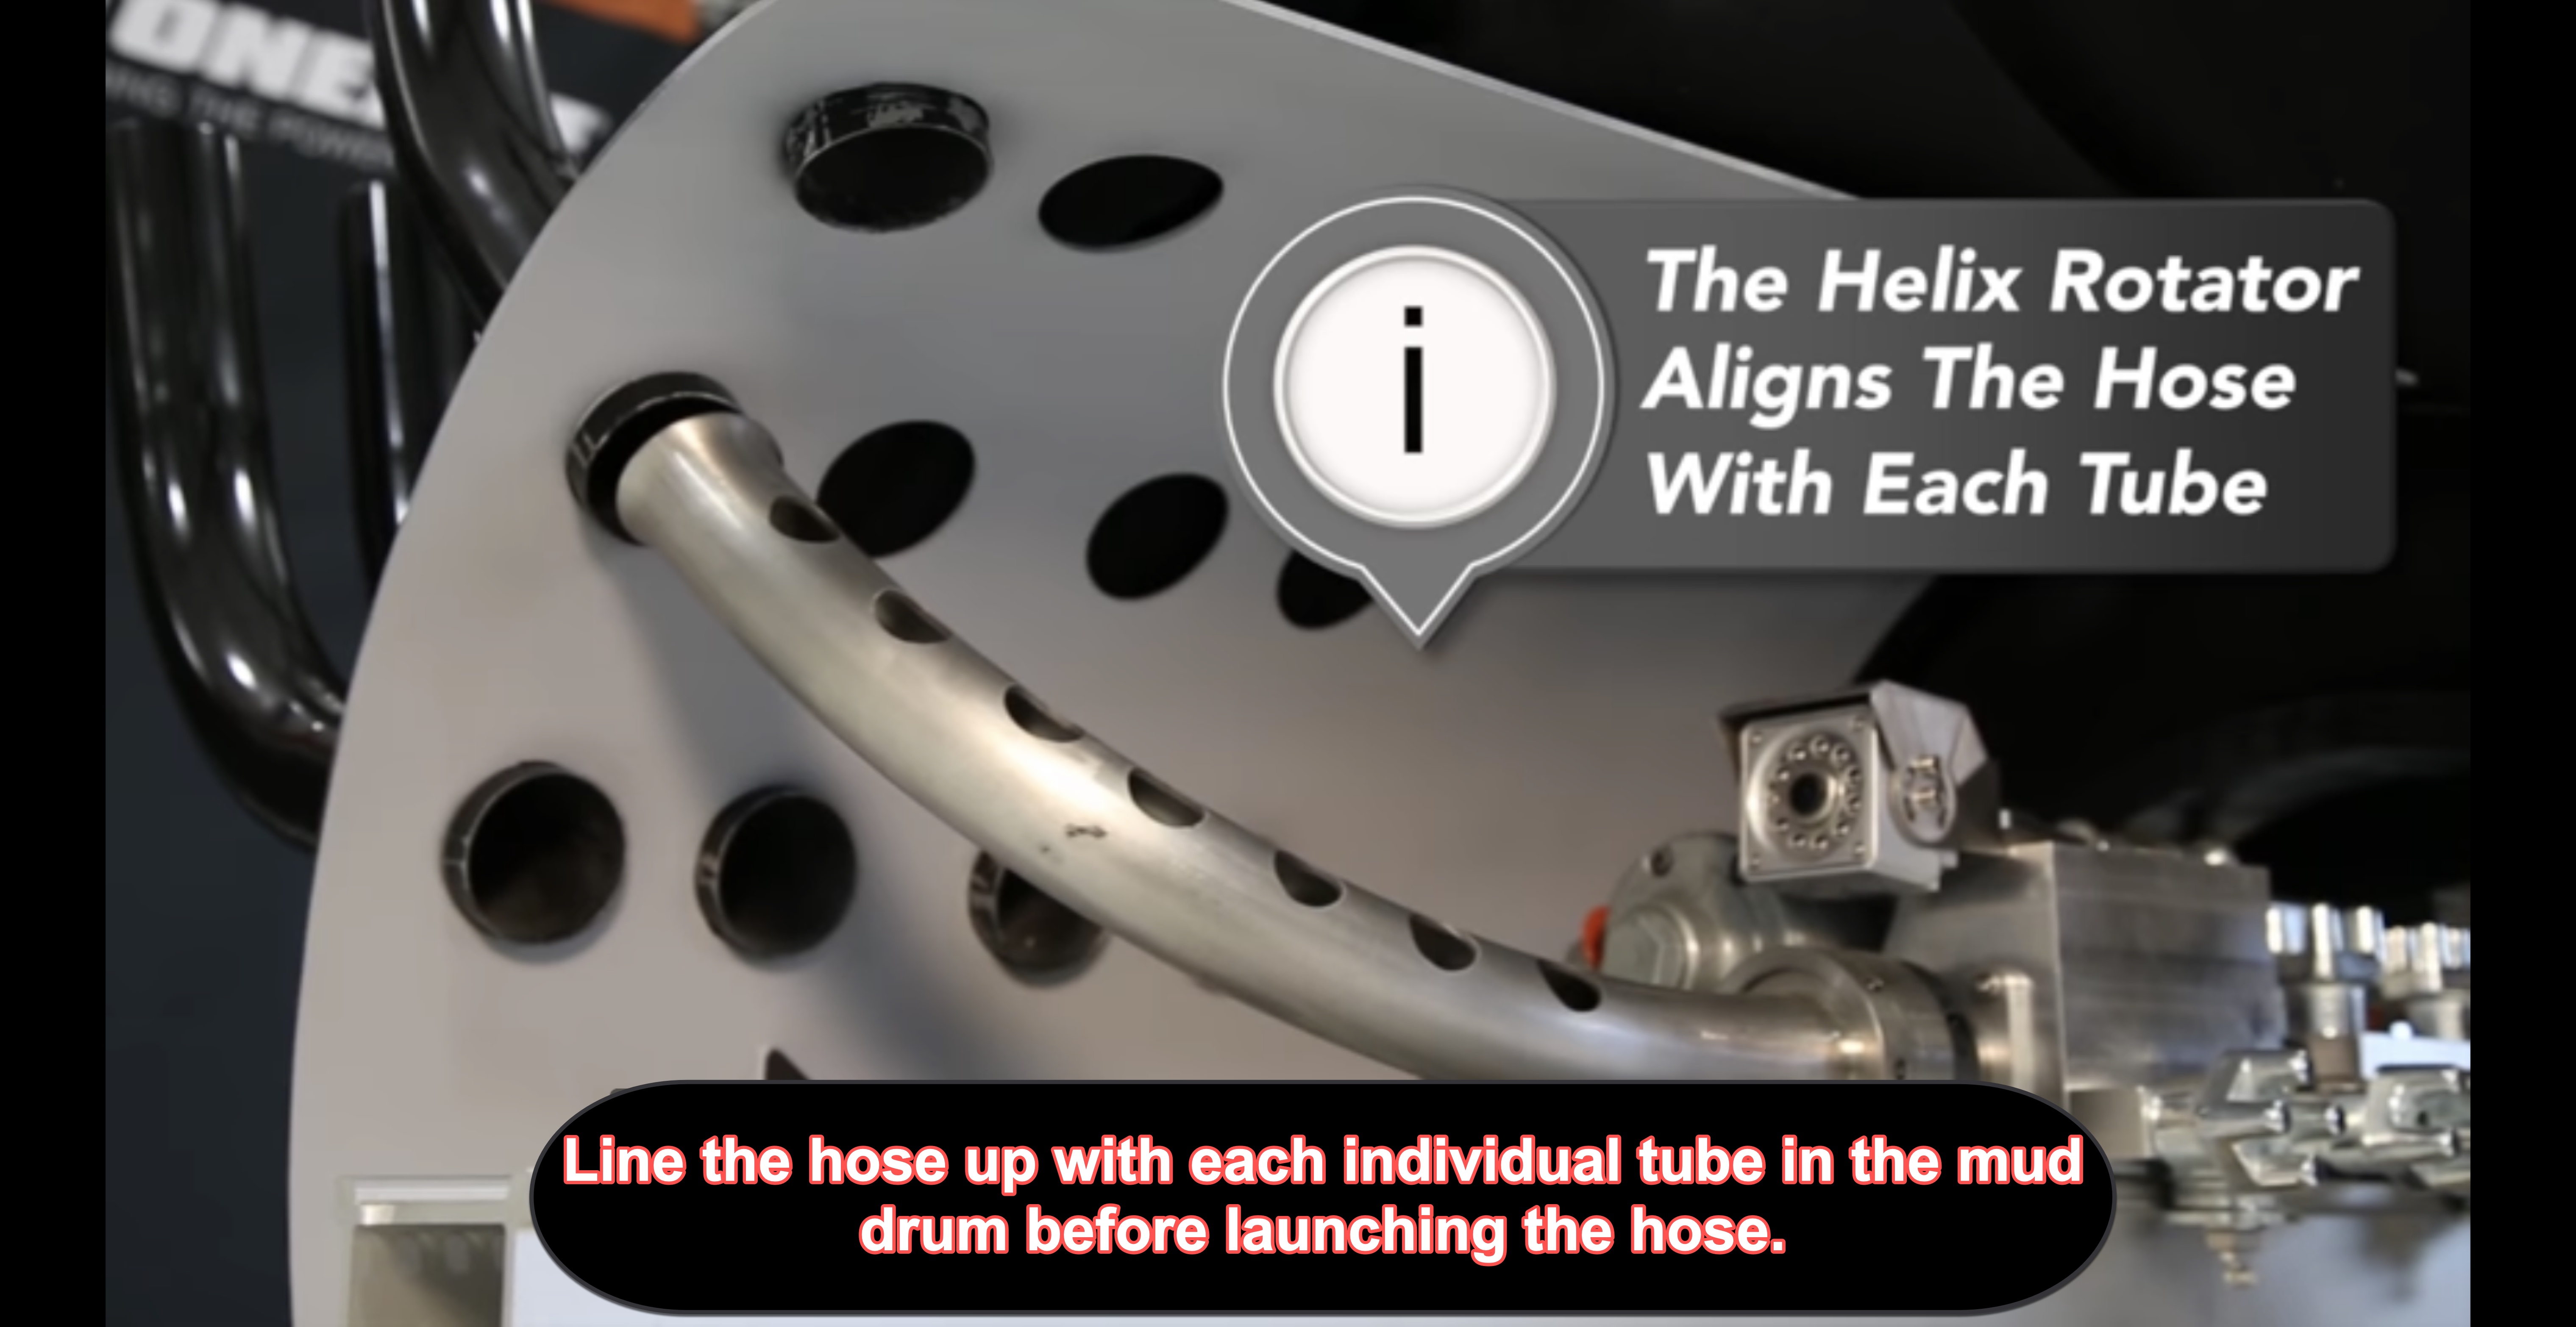 State-of-the-art boiler tube robot photo